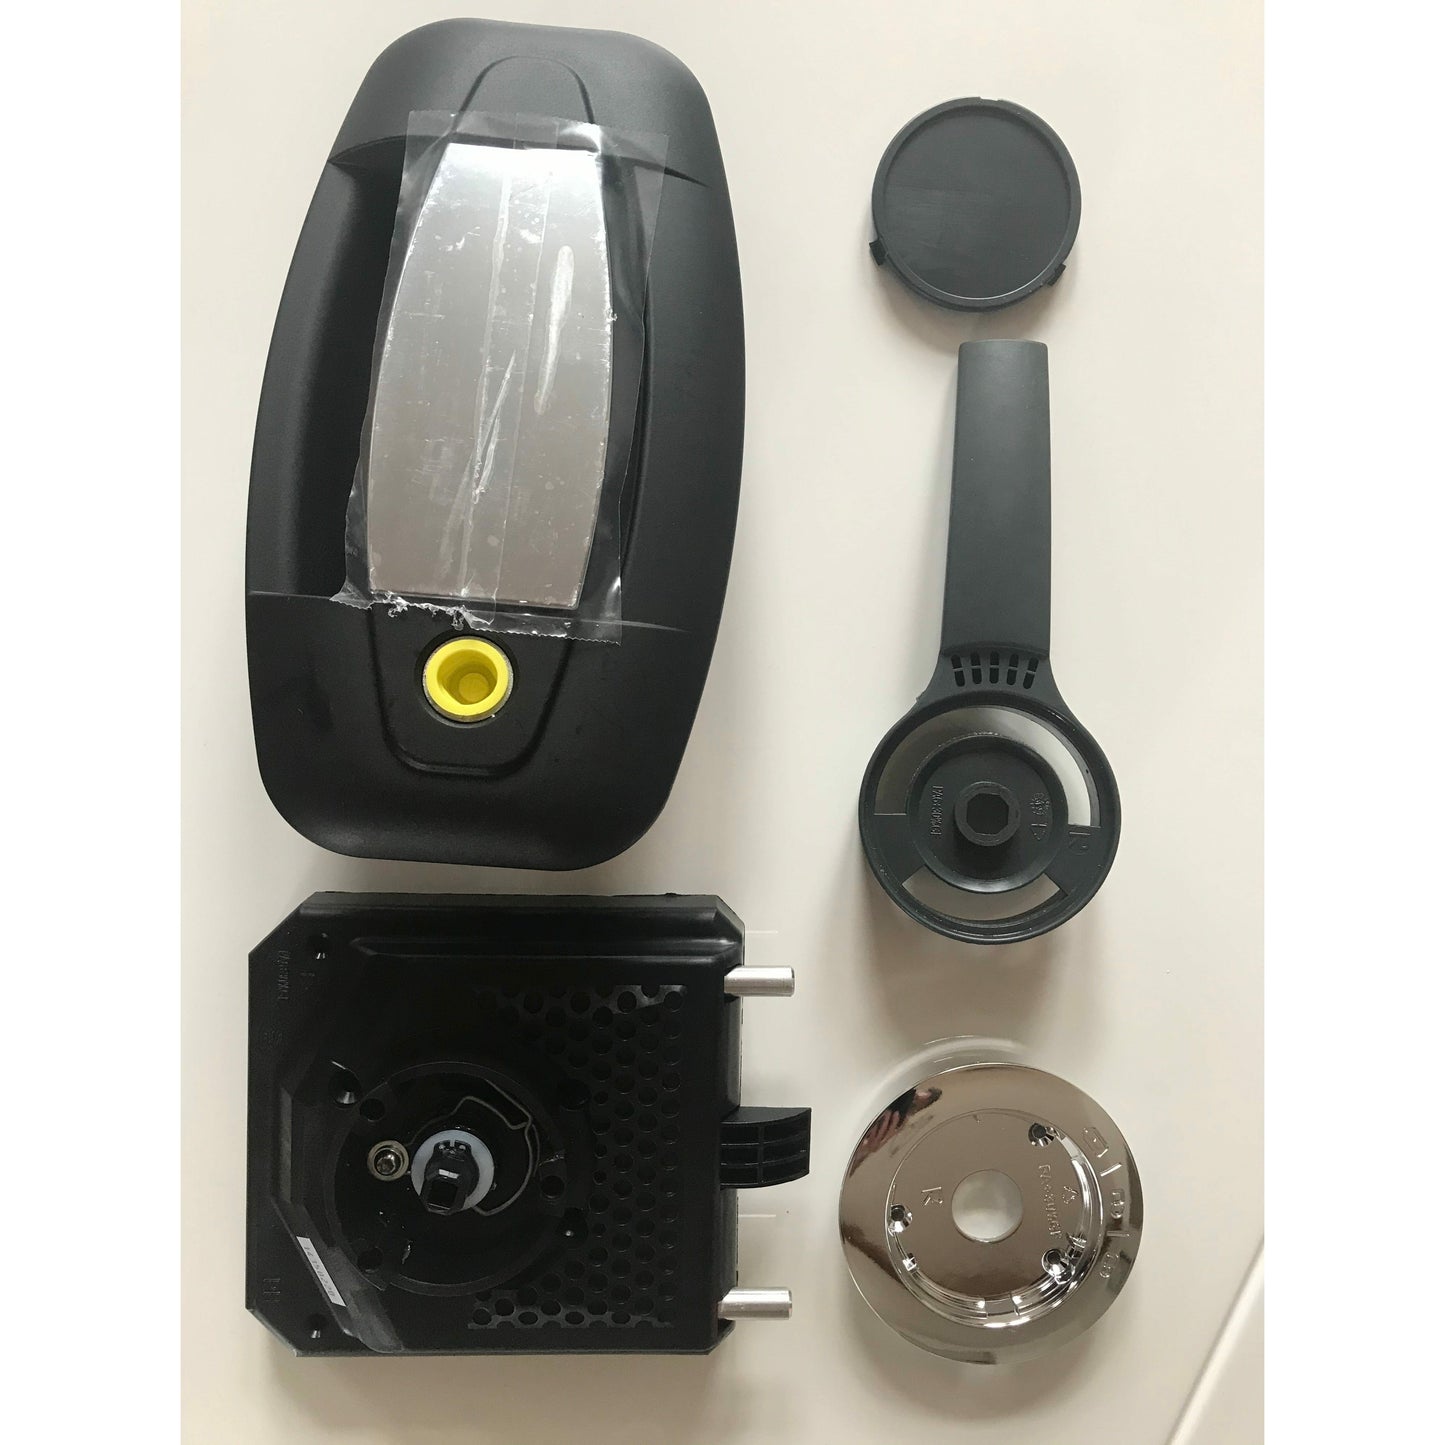 External Door Locks & Keys Security Hartal Replacement lock- Evoline+Secure R/H Black (Fits Swift Caravans / Motorhomes)